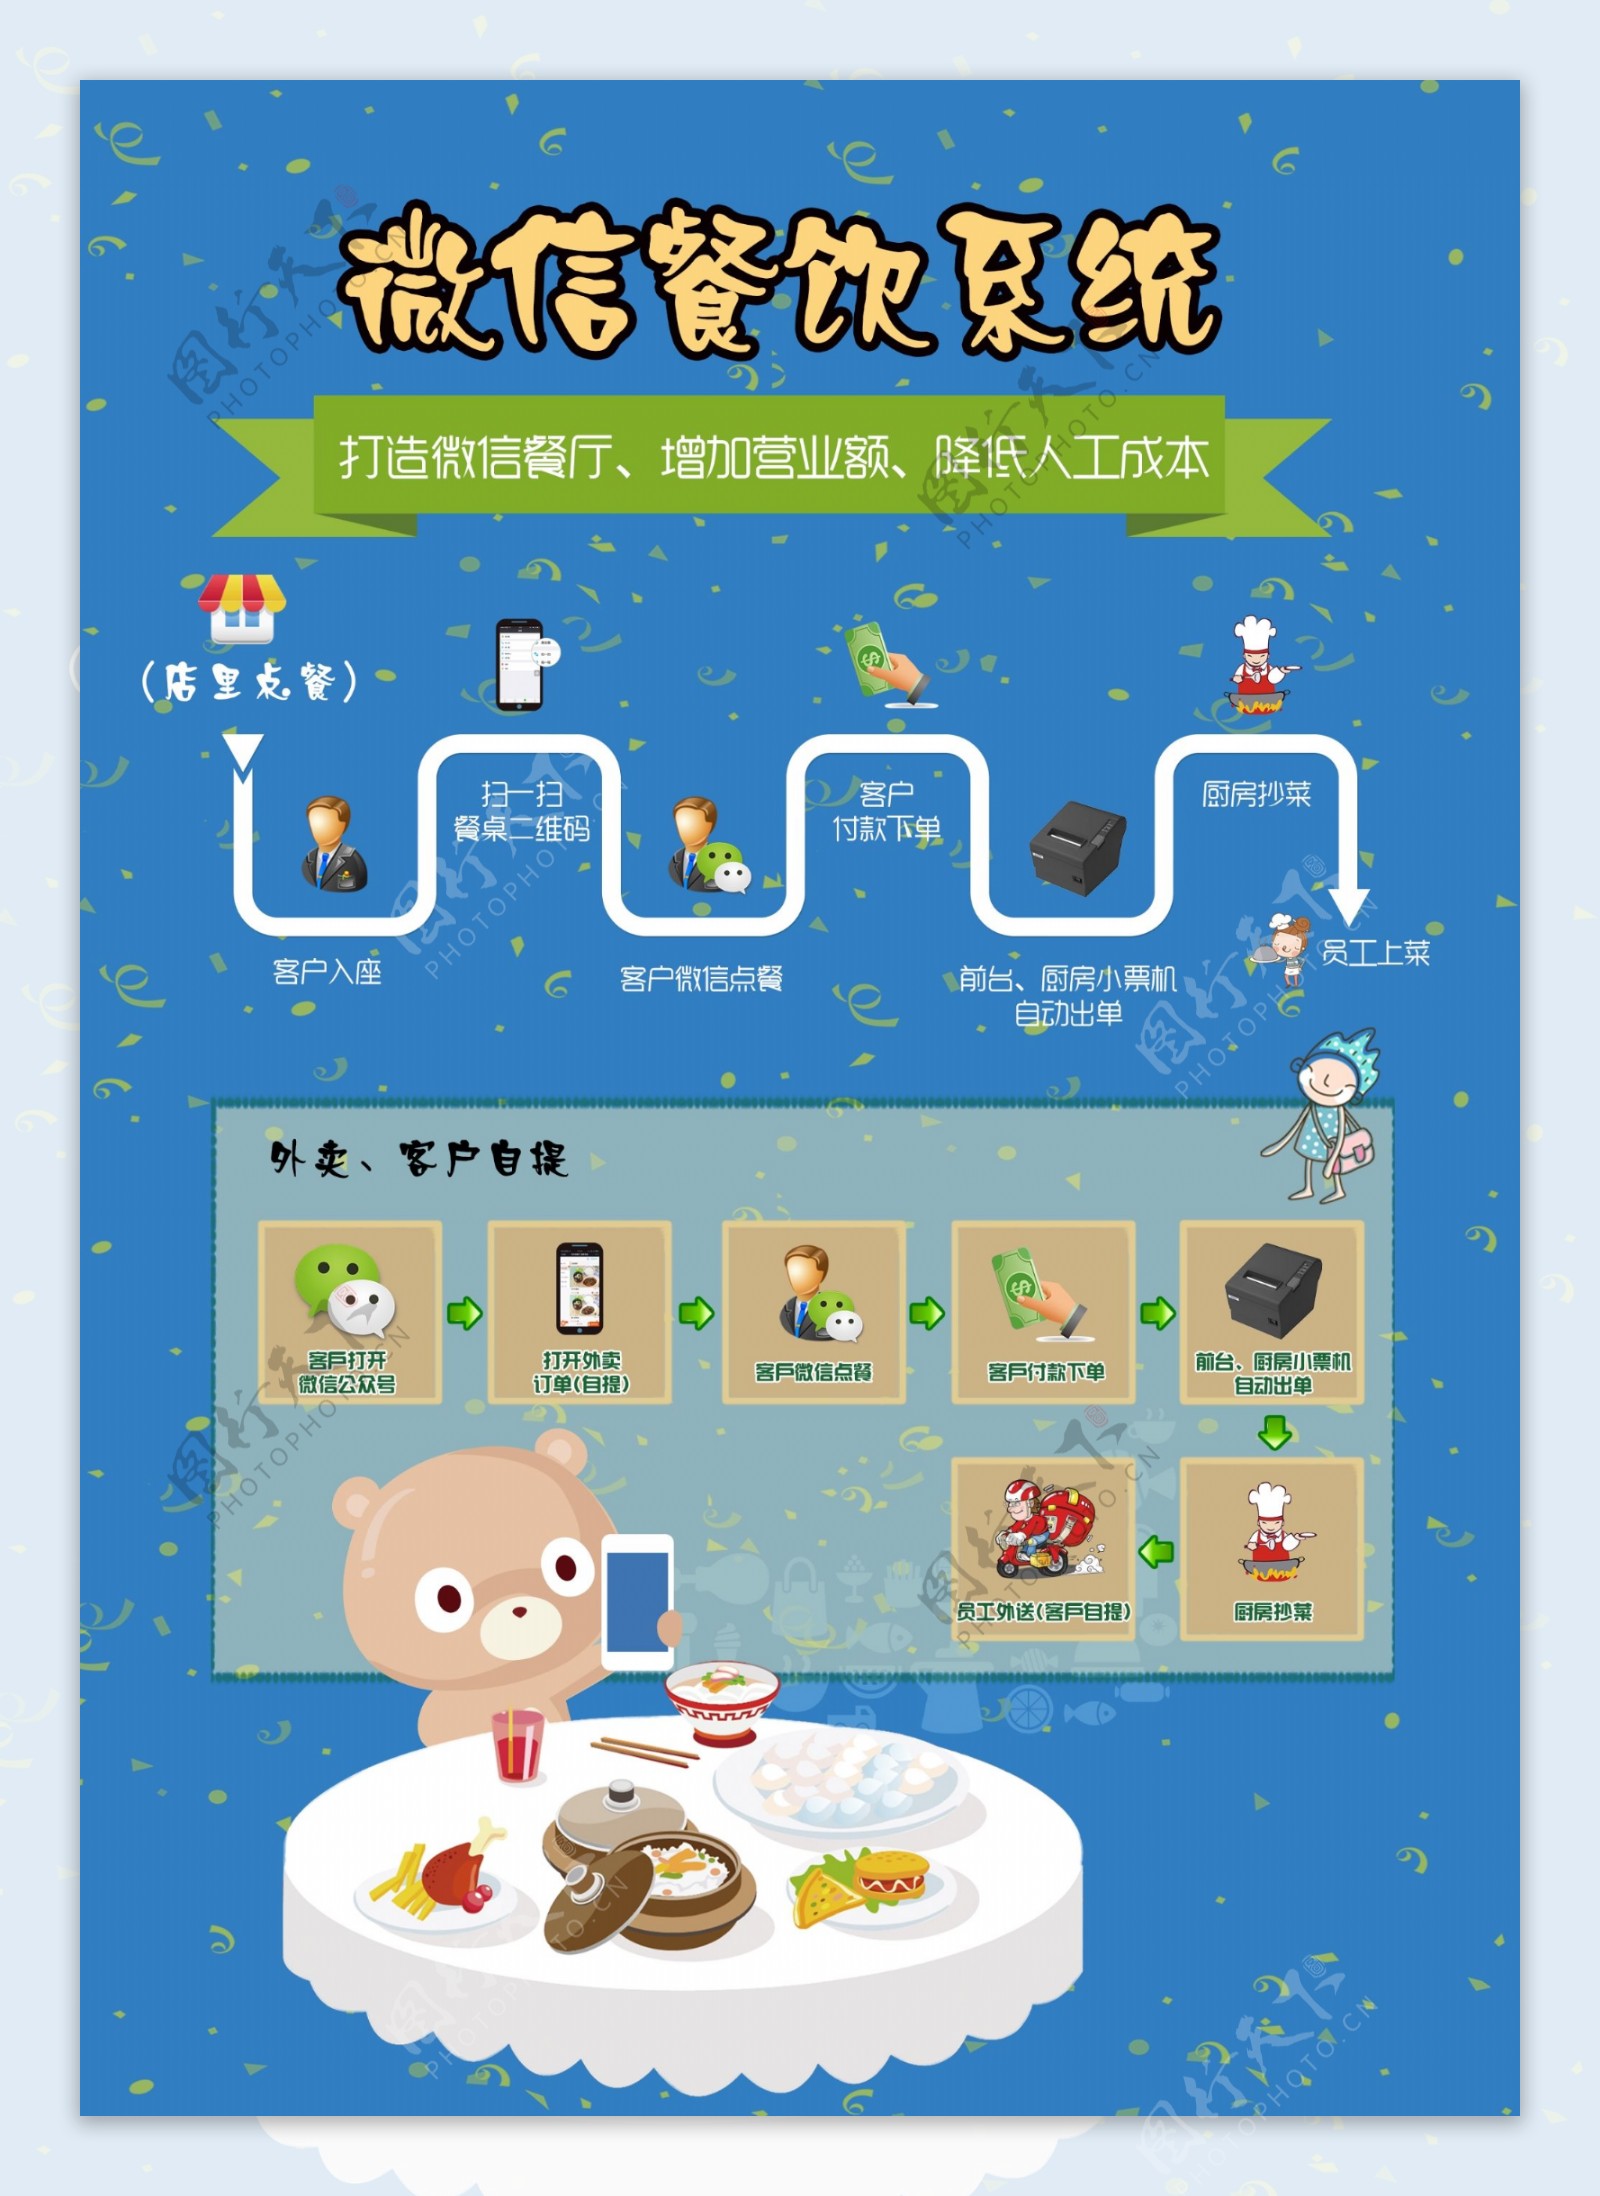 微信餐饮系统宣传海报